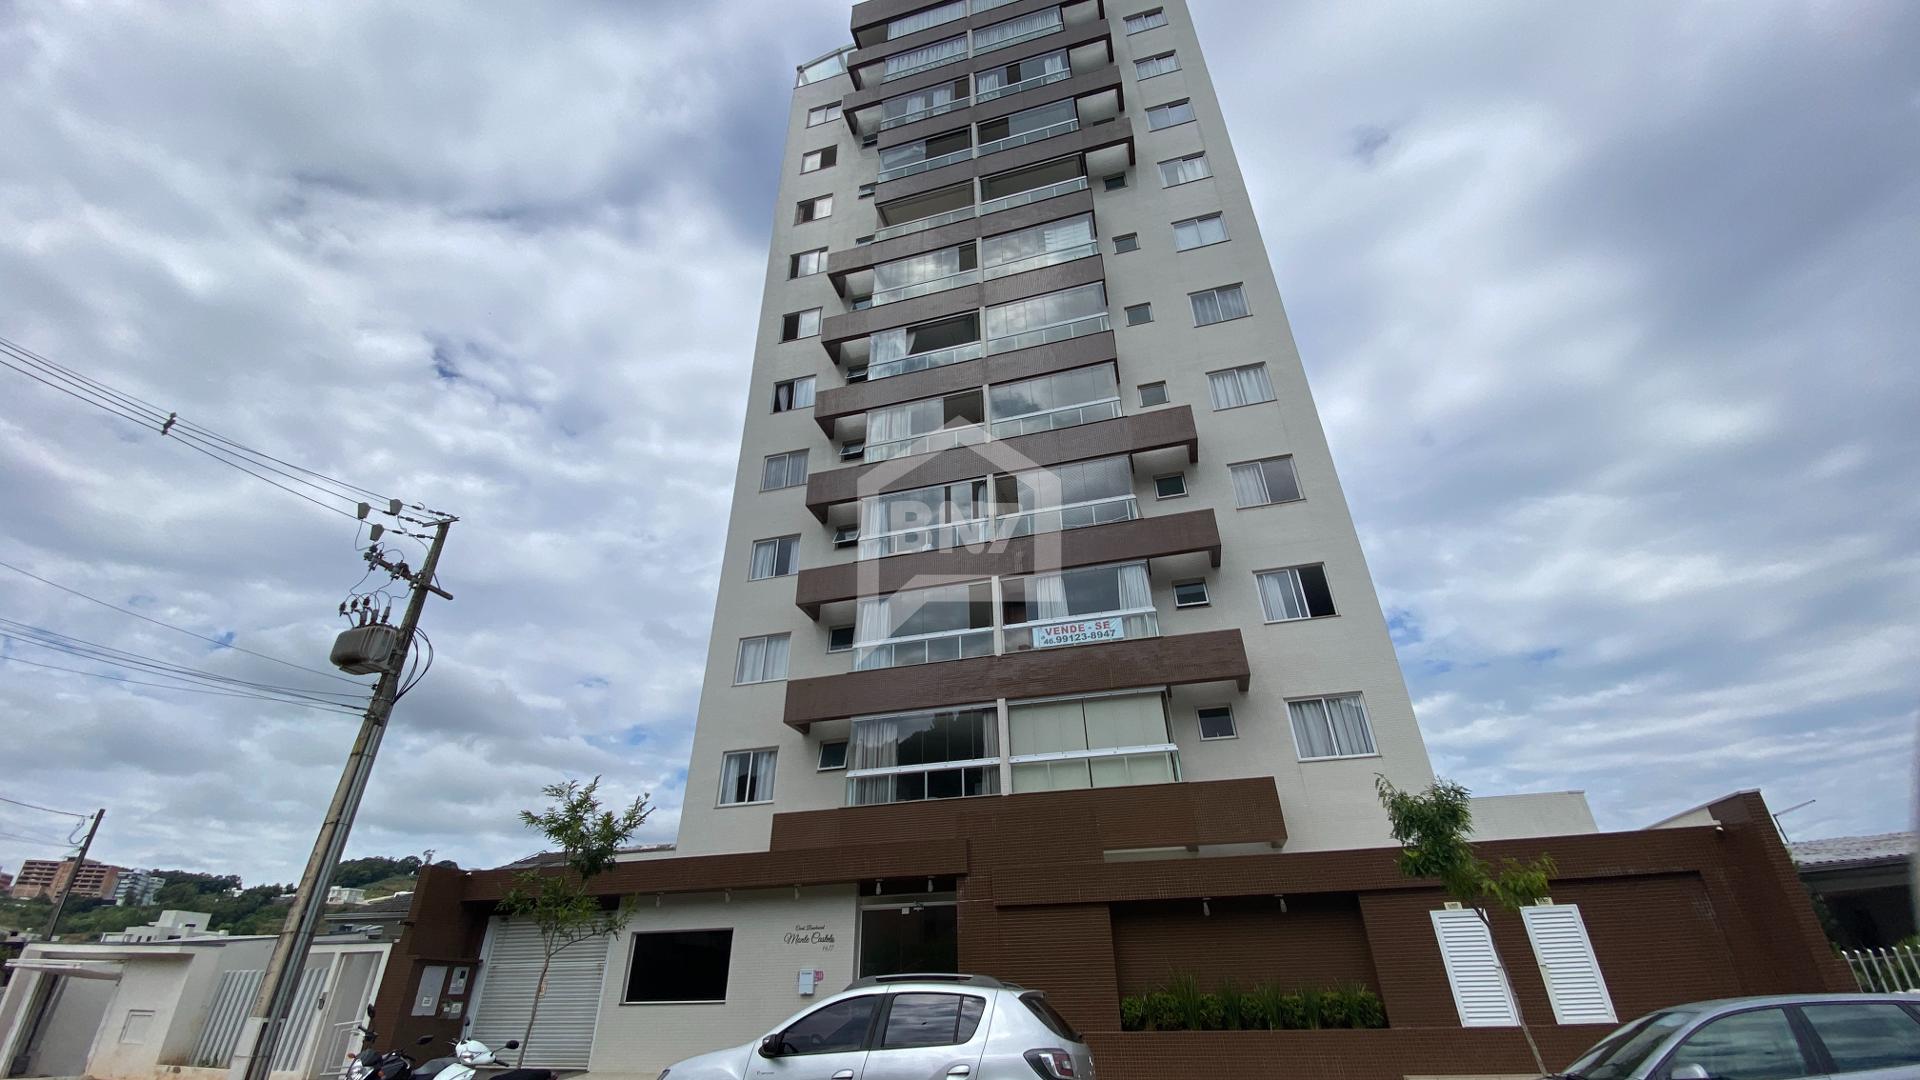 Imóveis para Venda - BN7 Negócios Imobiliária em Francisco Beltrão PR